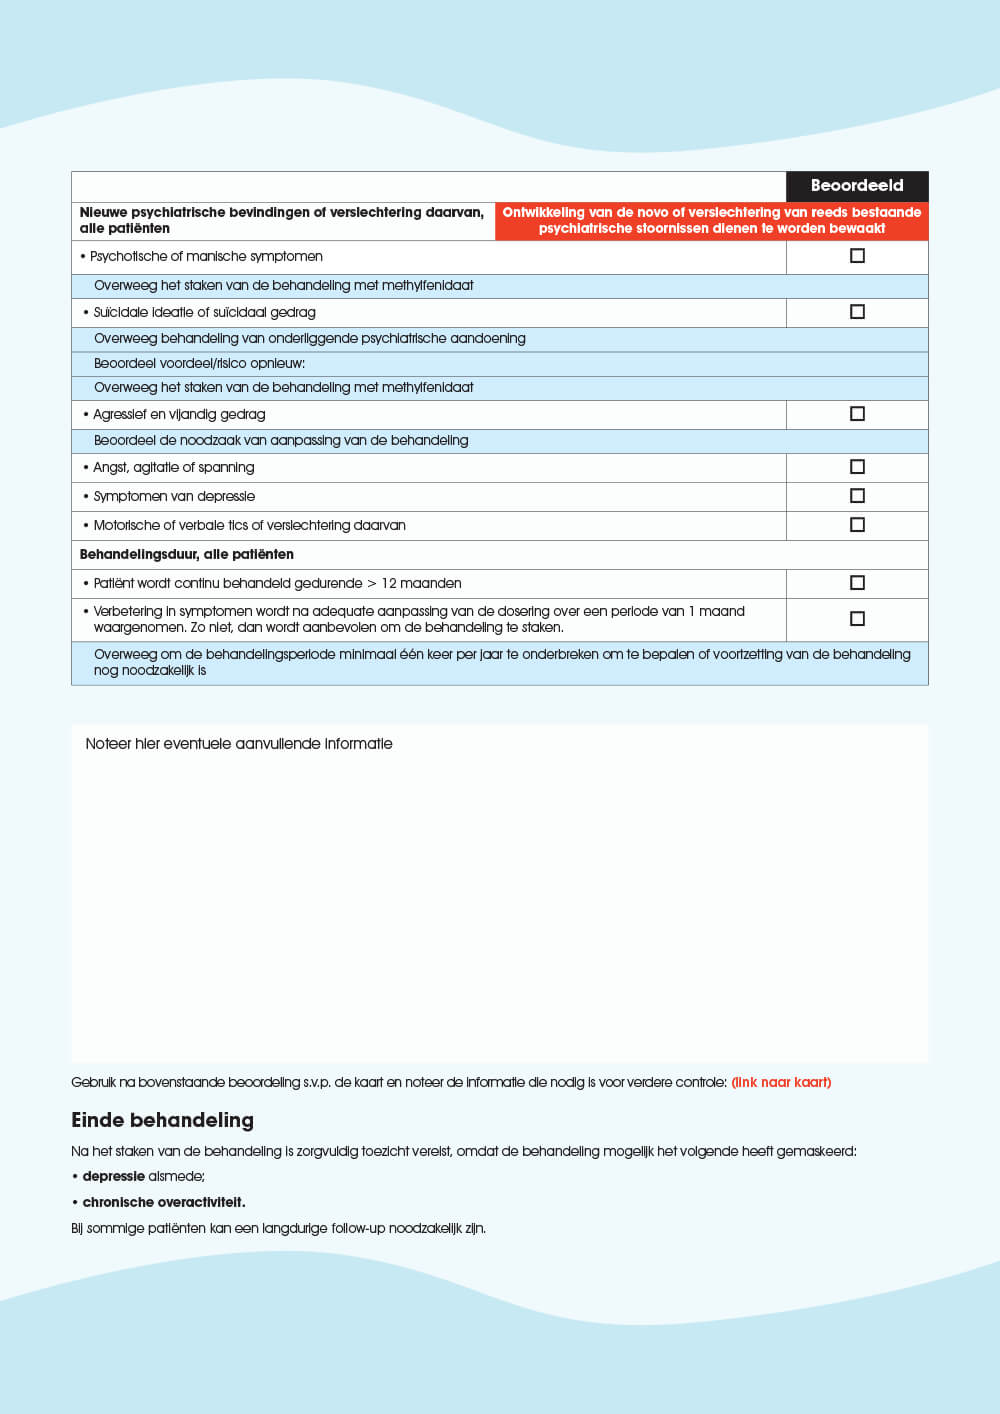 Preview: Checklist 2: Methylfenidaat-checklist voor doorlopende controle tijdens de voortdurende behandeling 